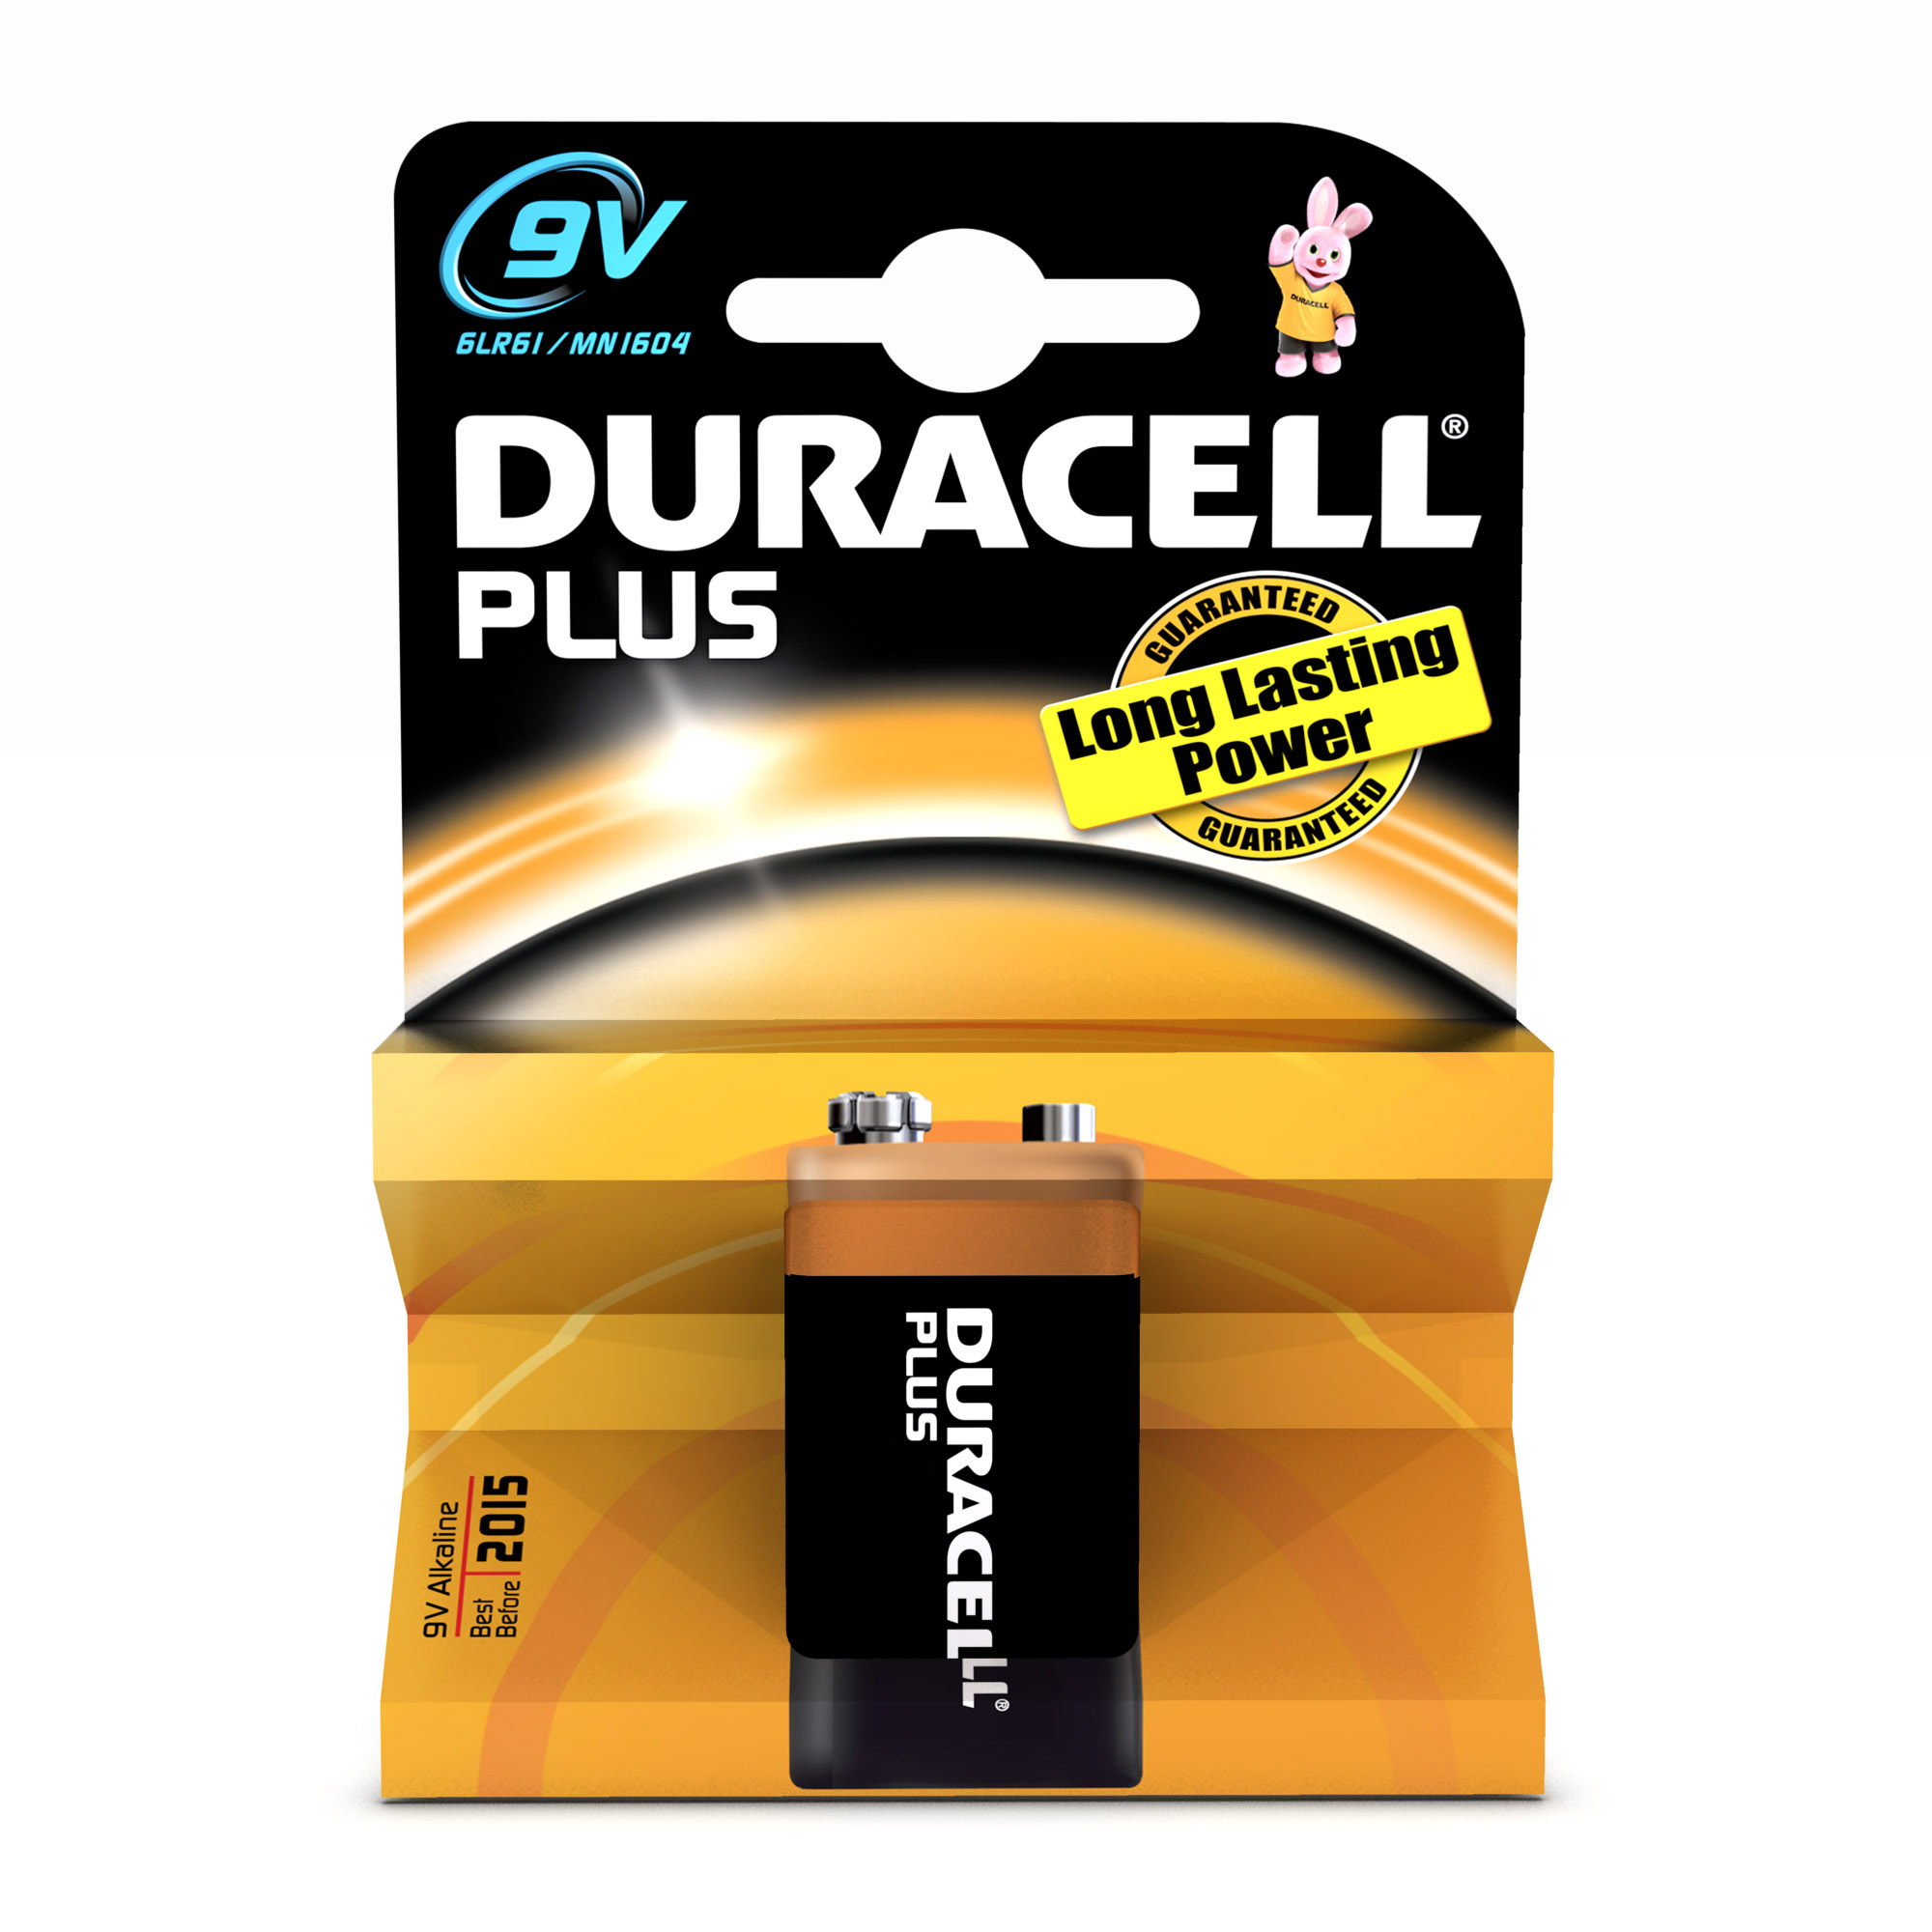 Duracell 9V Plus